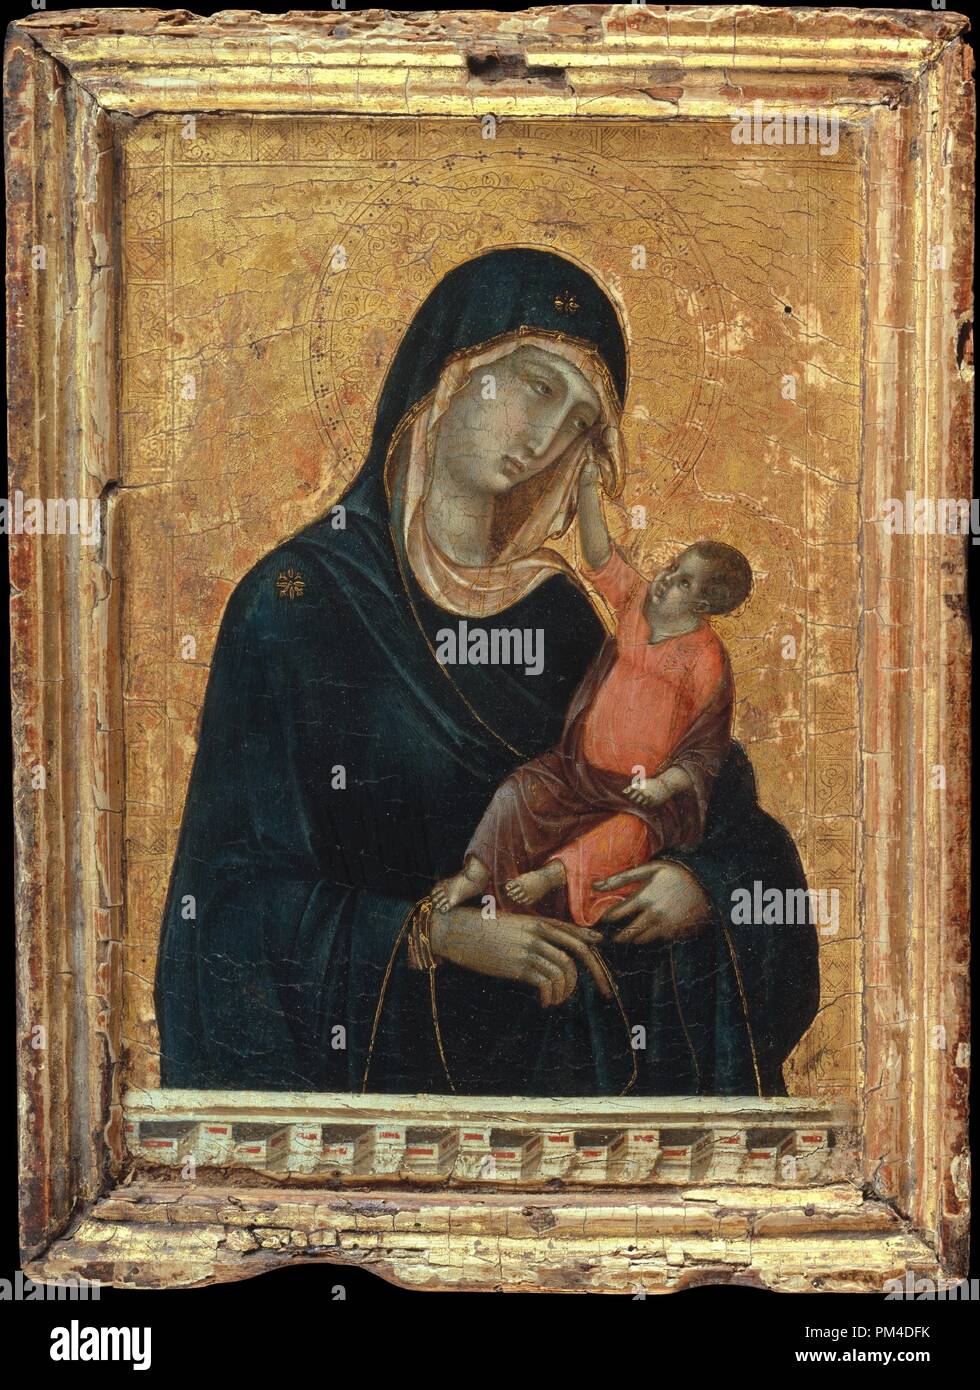 Vierge à l'enfant. Artiste : Duccio di Buoninsegna (Italien, actif en 1278-mort 1318 Sienne). Dimensions : hors tout, avec cadre, 11 x 8 1/4 in. (27,9 x 21 cm) ; surface peinte 9 3/8 x 6 1/2 in. (23,8 x 16,5 cm). Date : ca. 1290-1300. Ce travail lyrique inaugure la grande tradition dans l'art italien d'envisager les figures sacrées de la Vierge à l'enfant en termes ouverts à partir de la vie réelle. L'enfant Christ repousse doucement le voile de sa mère, dont l'expression triste reflète sa prescience de sa crucifixion. Les chambres joliment modélisés améliore leur draperie en trois dimensions, Banque D'Images